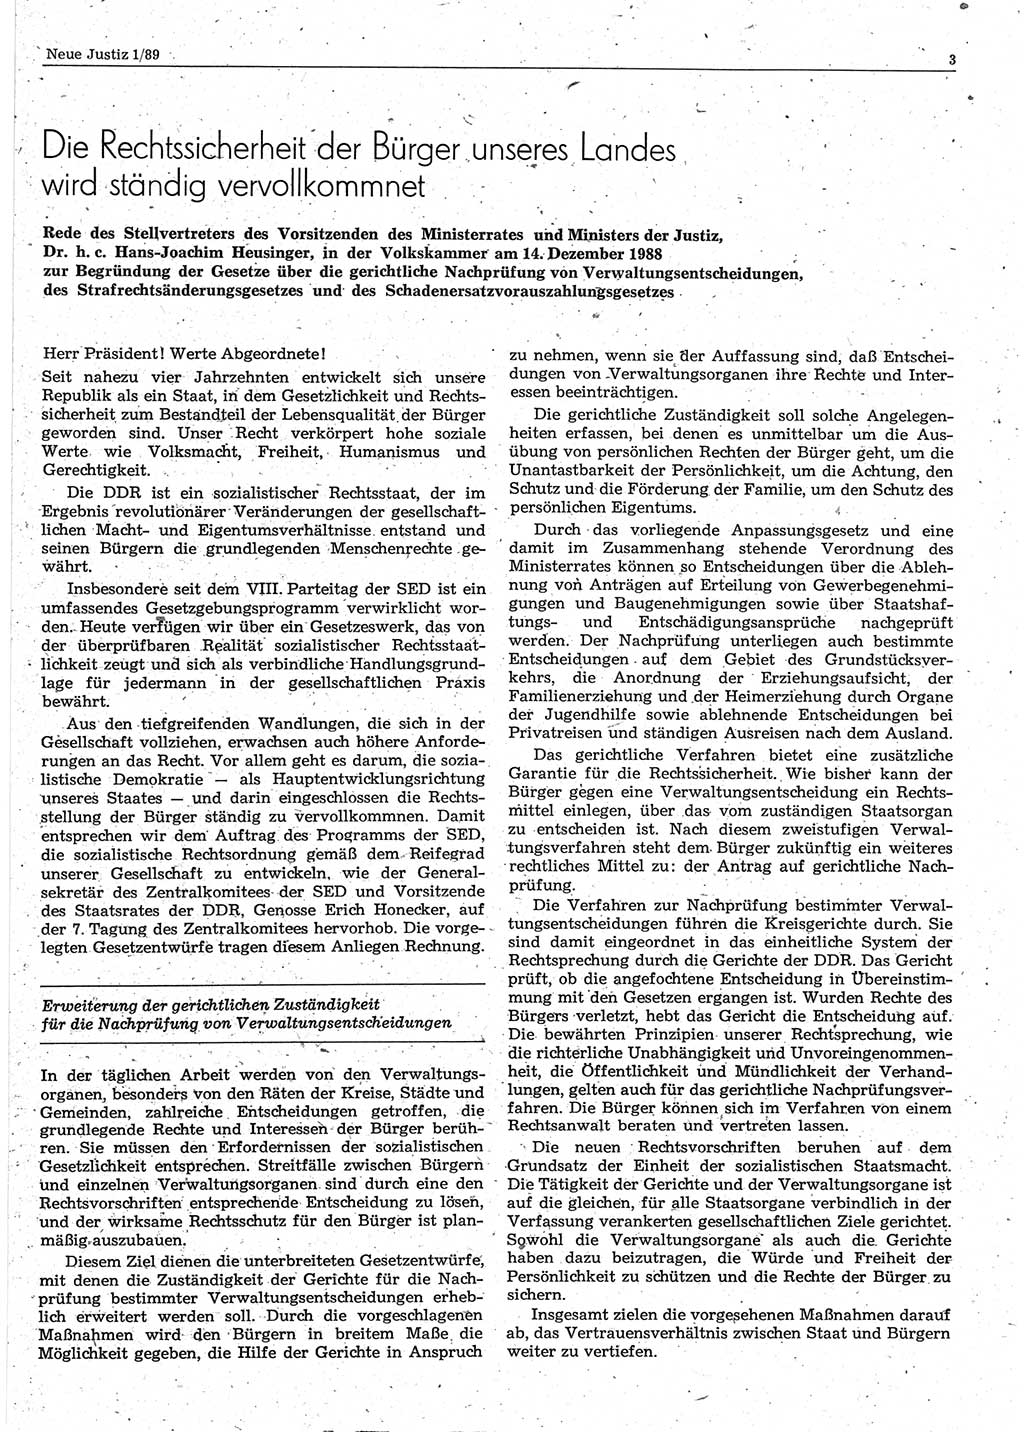 Neue Justiz (NJ), Zeitschrift für sozialistisches Recht und Gesetzlichkeit [Deutsche Demokratische Republik (DDR)], 43. Jahrgang 1989, Seite 3 (NJ DDR 1989, S. 3)